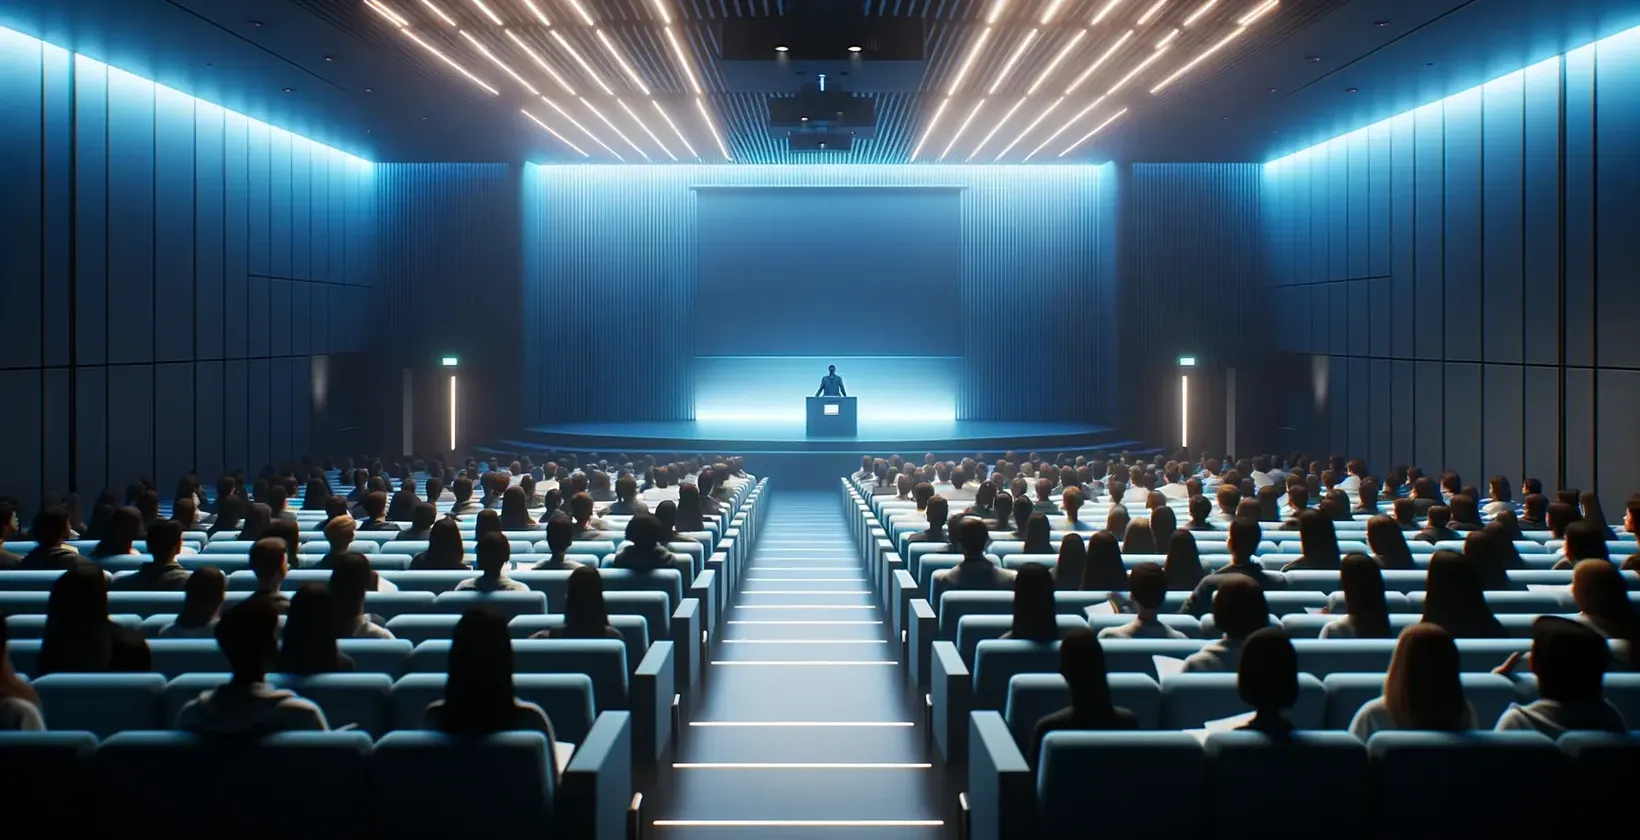 O ambiente da sala de conferências é pouco iluminado, com os participantes virados para um palco e um orador no pódio